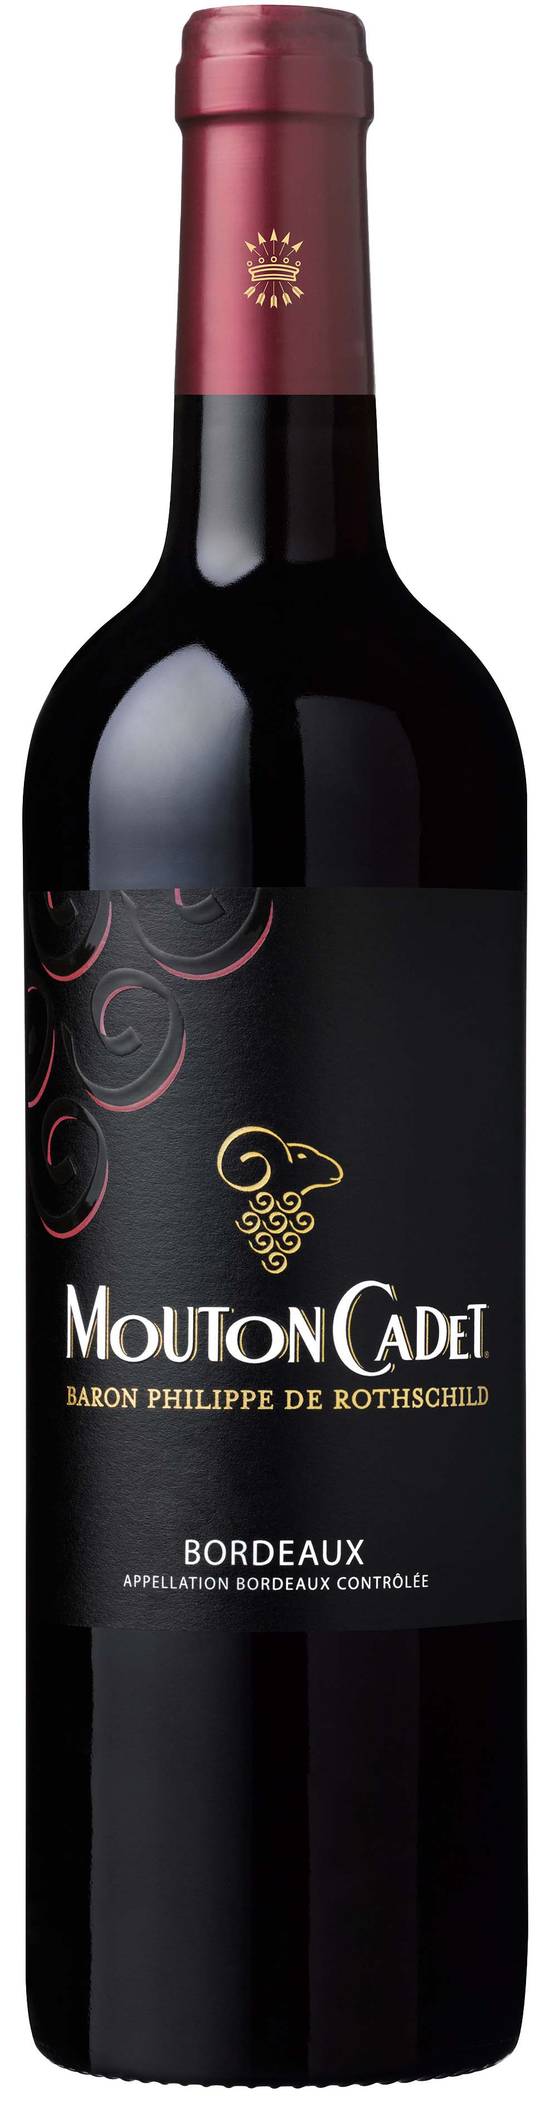 Mouton Cadet - Vin rouge Bordeaux (750 ml)